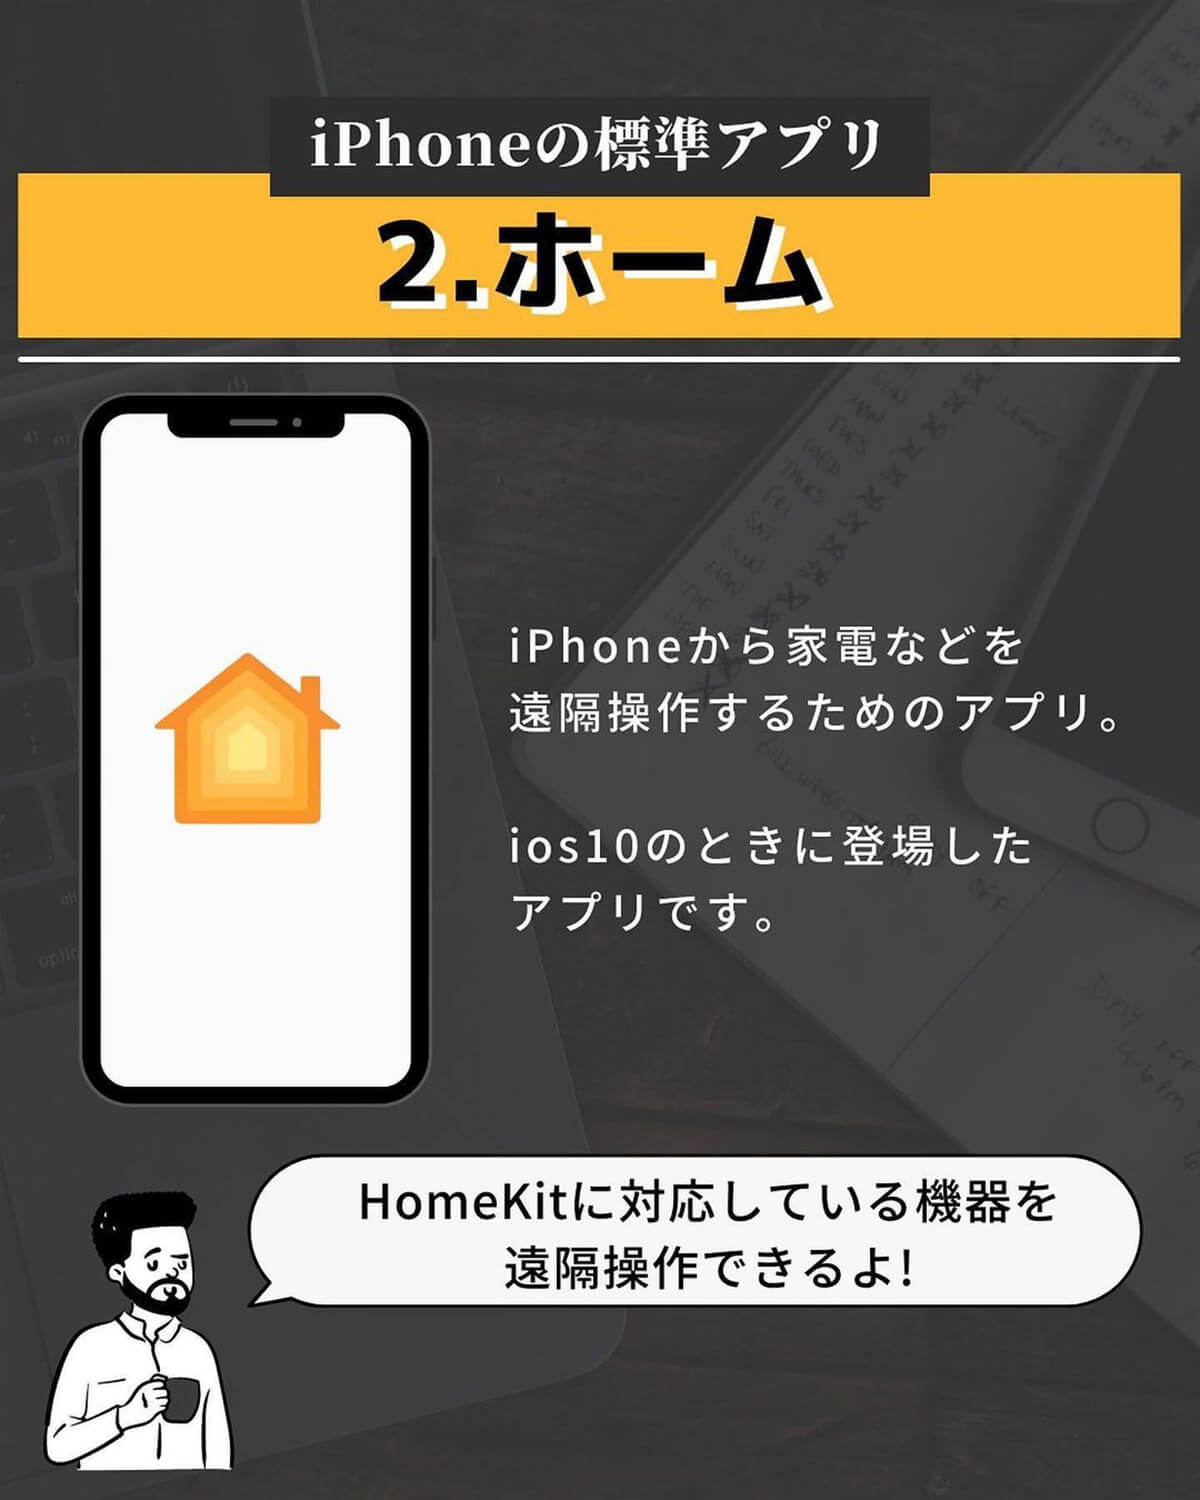 iPhoneの標準アプリ「ホーム」